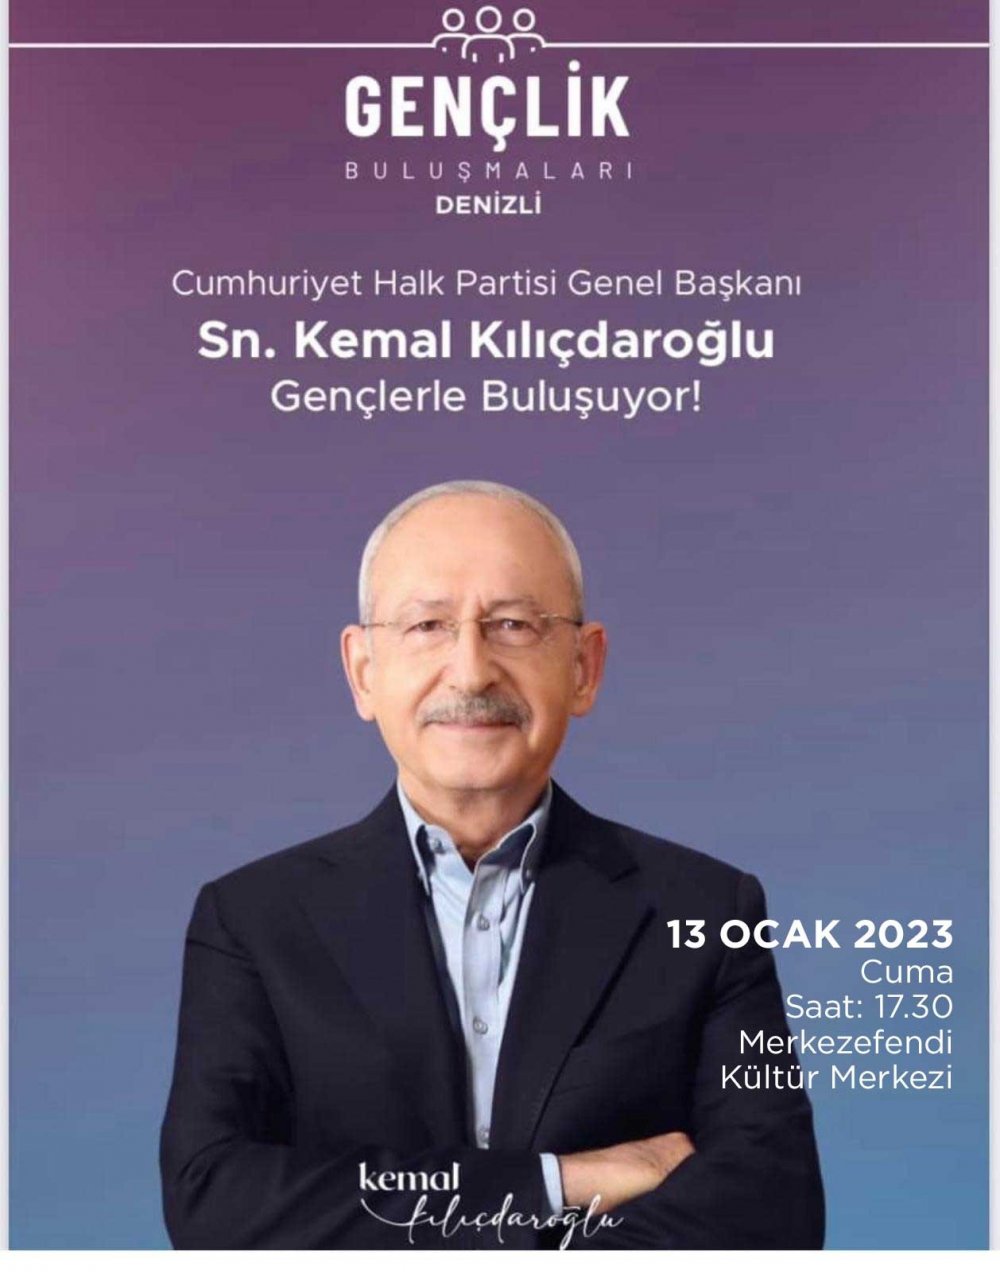 Cumhuriyet Halk Partisi Genel Başkanı Kemal Kılıçdaroğlu'nun 12 Ocak Perşembe günü gerçekleştireceği ‘Toplu Açılış’ töreni, dayısı Ali Gündüz’ün vefatından dolayı 13 Ocak Cuma gününe ertelendi.